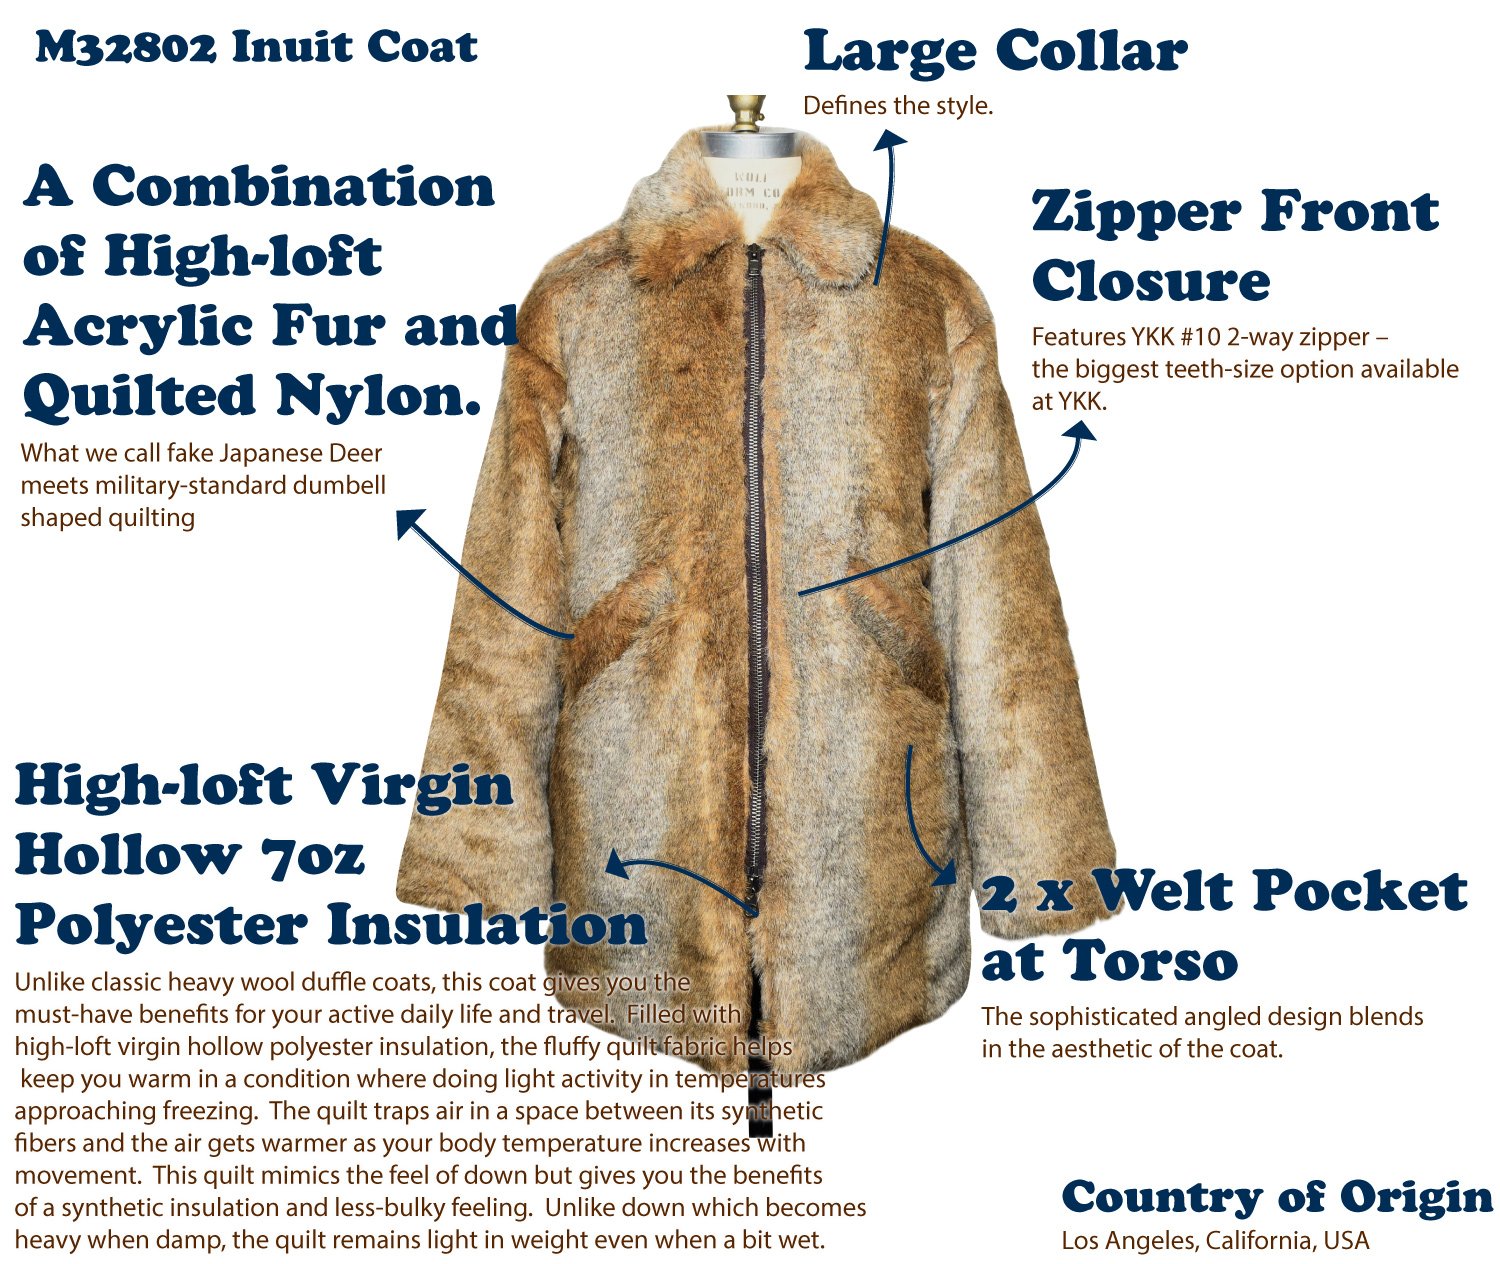 M32802-Inuit-Coat.jpg